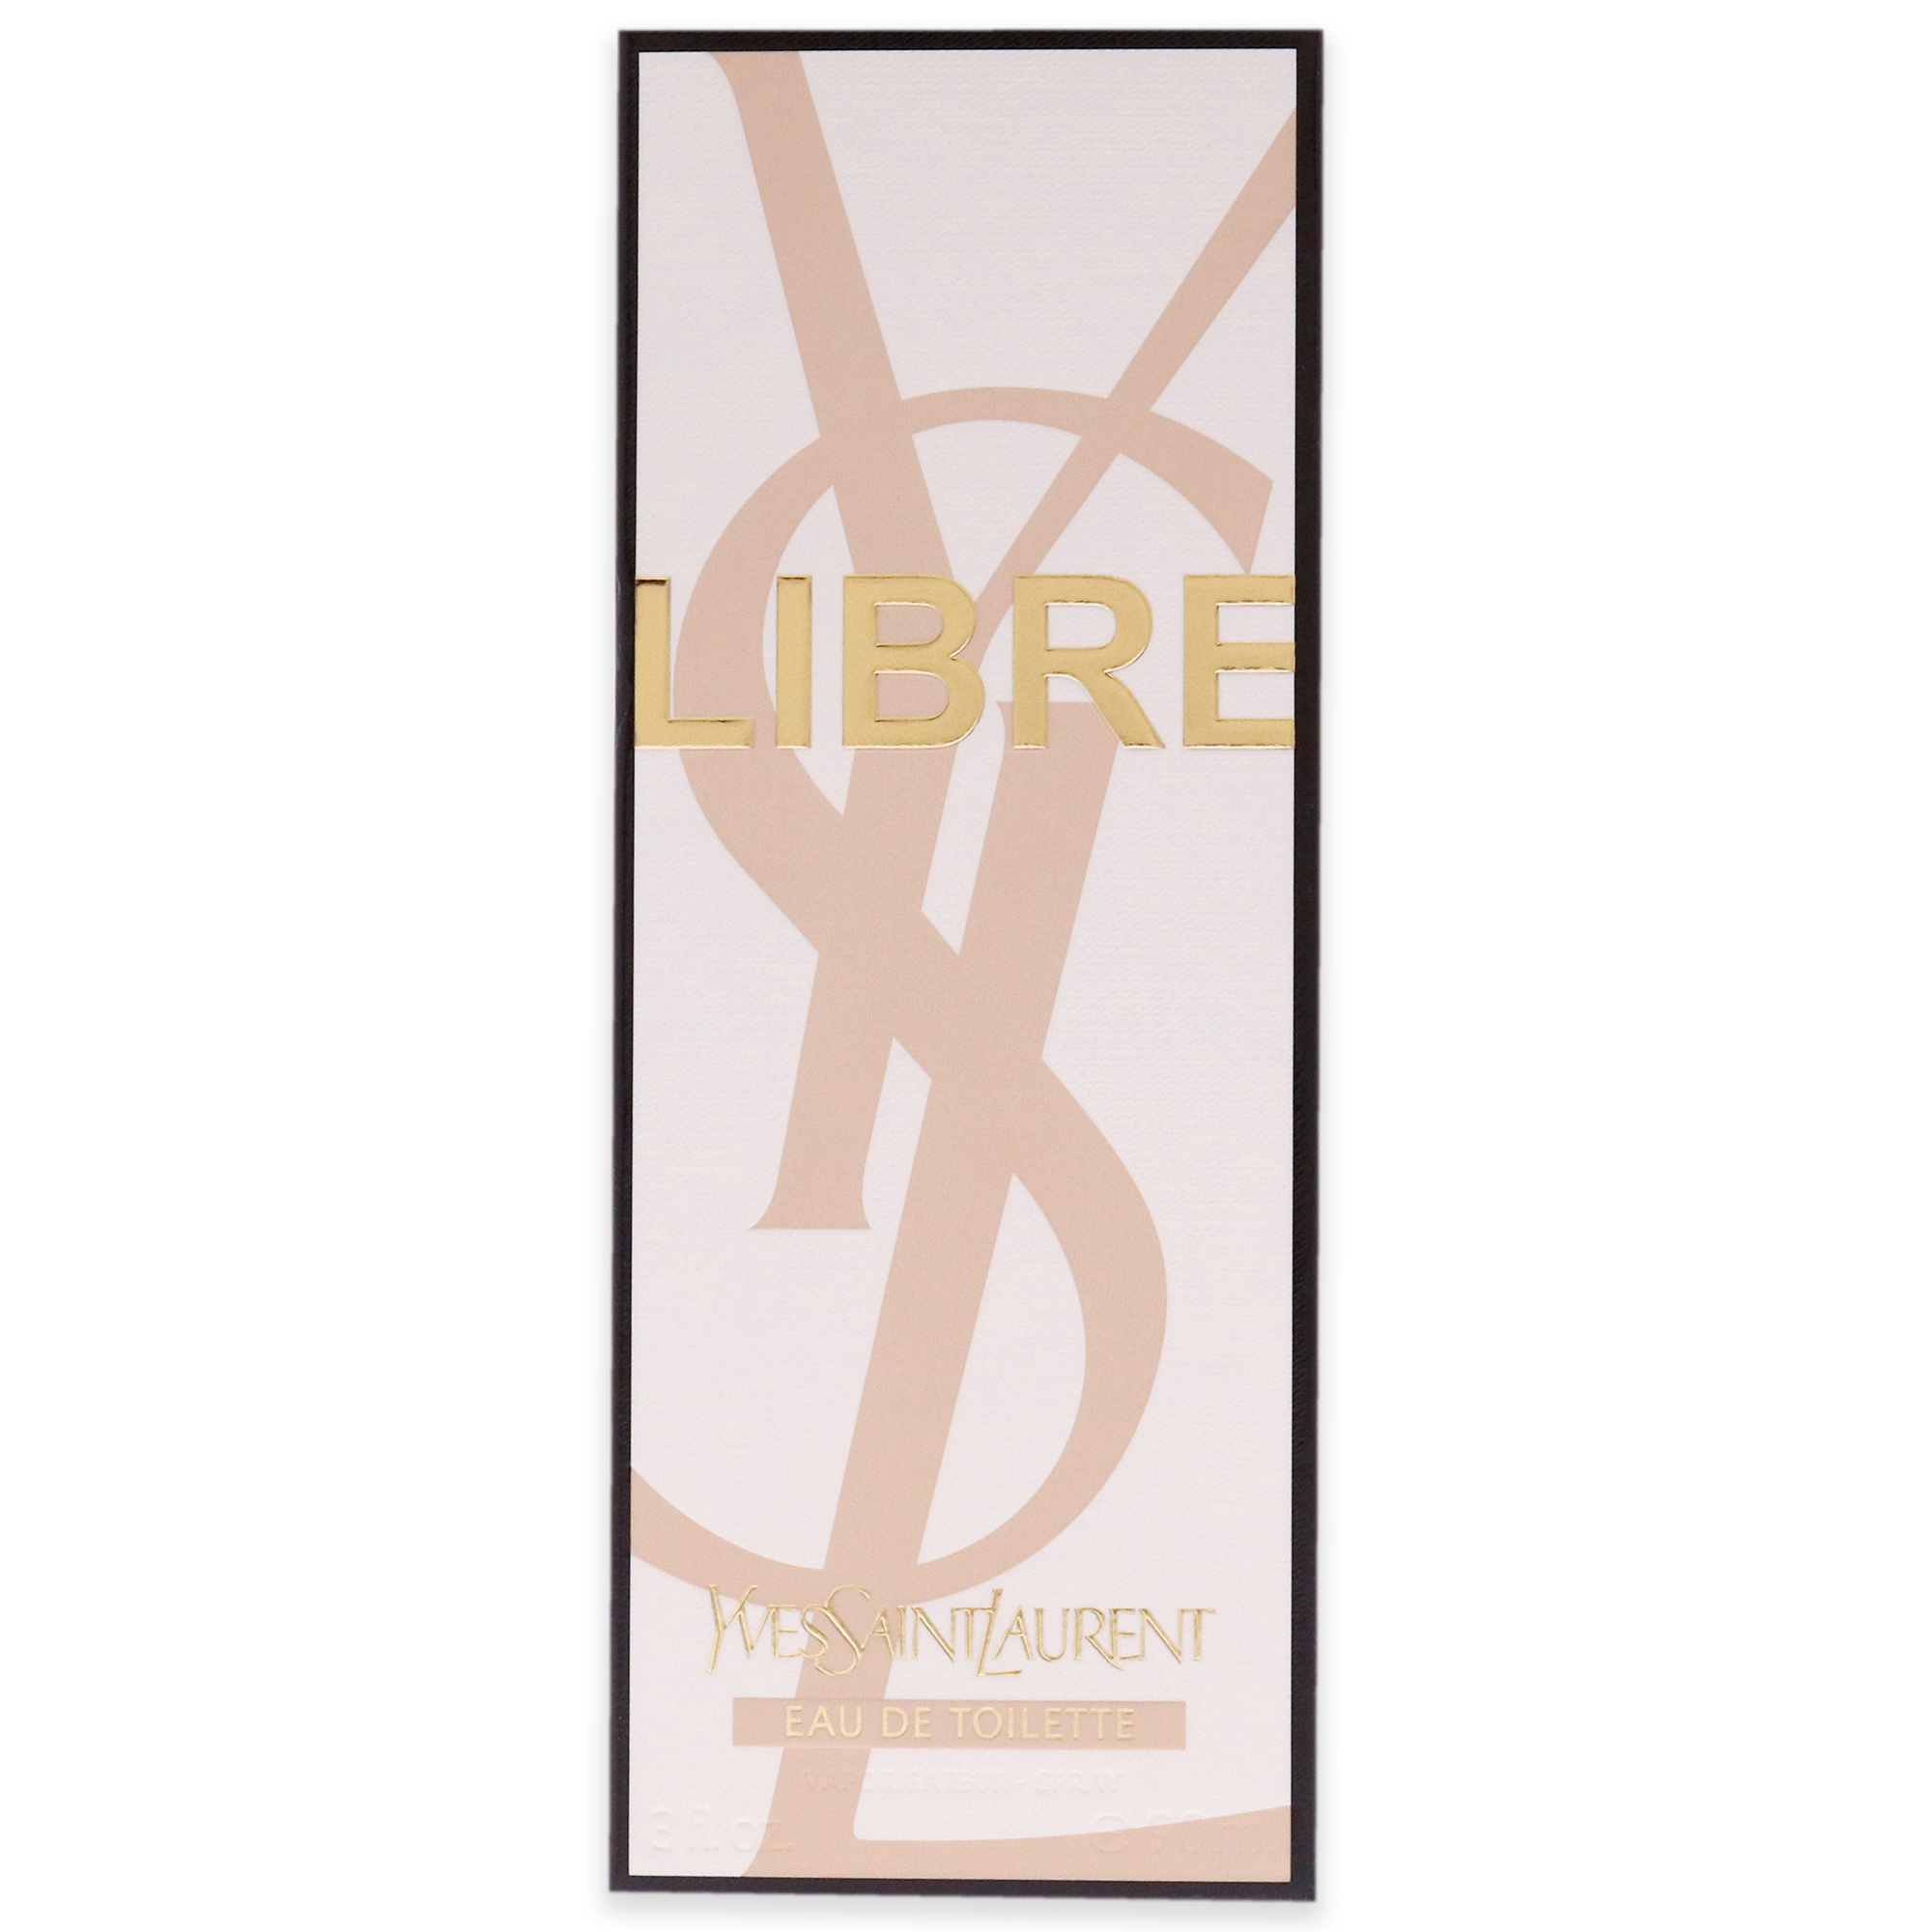 Libre by Yves Saint Laurent Eau De Toilette Spray 3 oz for Women - image 5 of 6